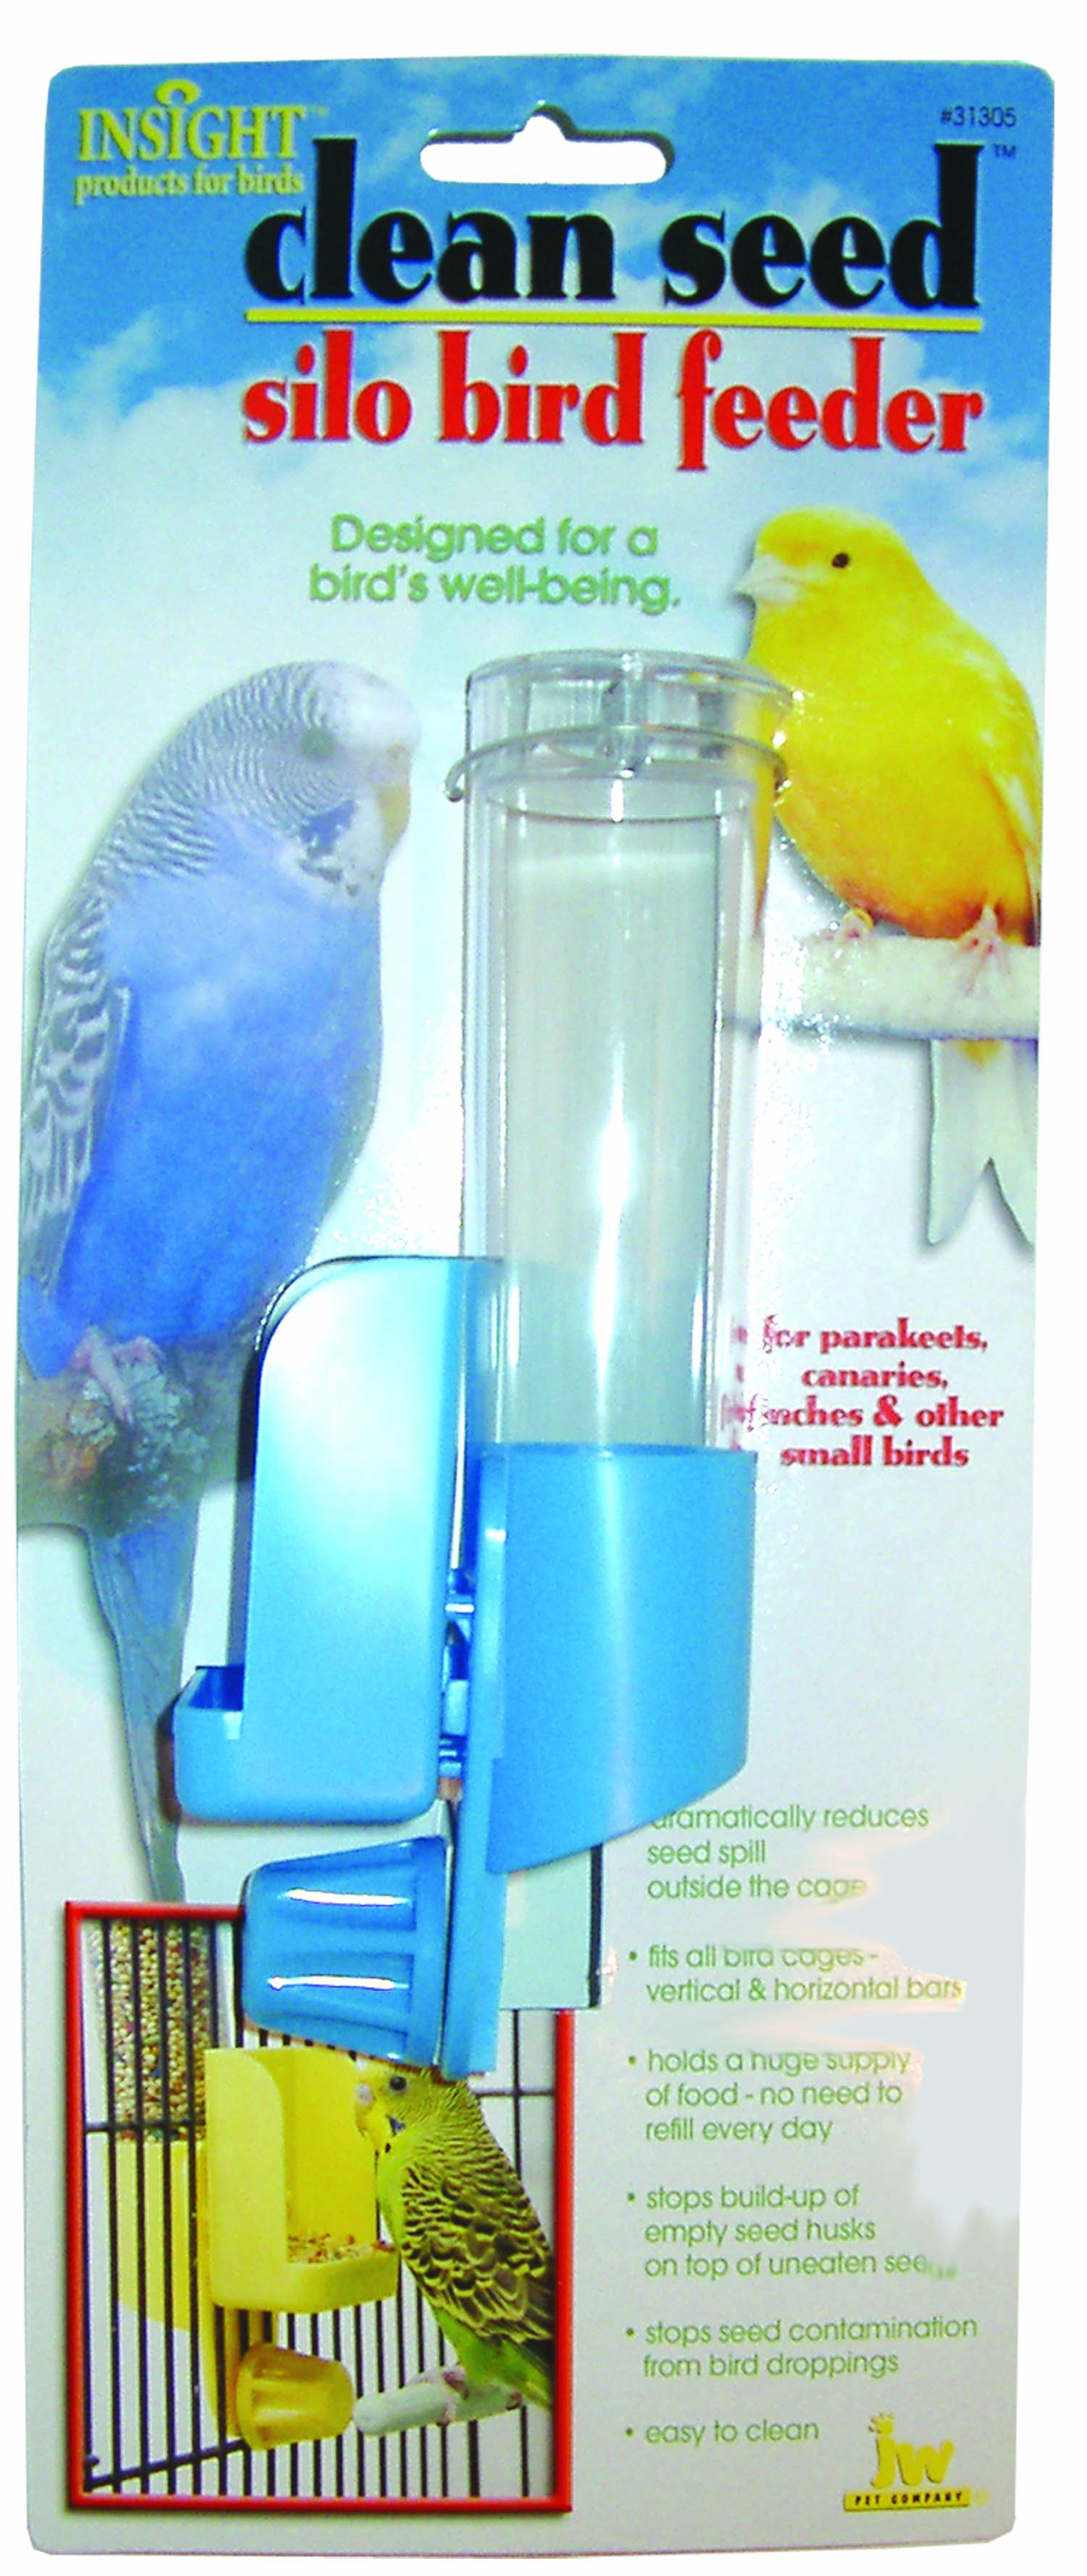 Silo bird feeder